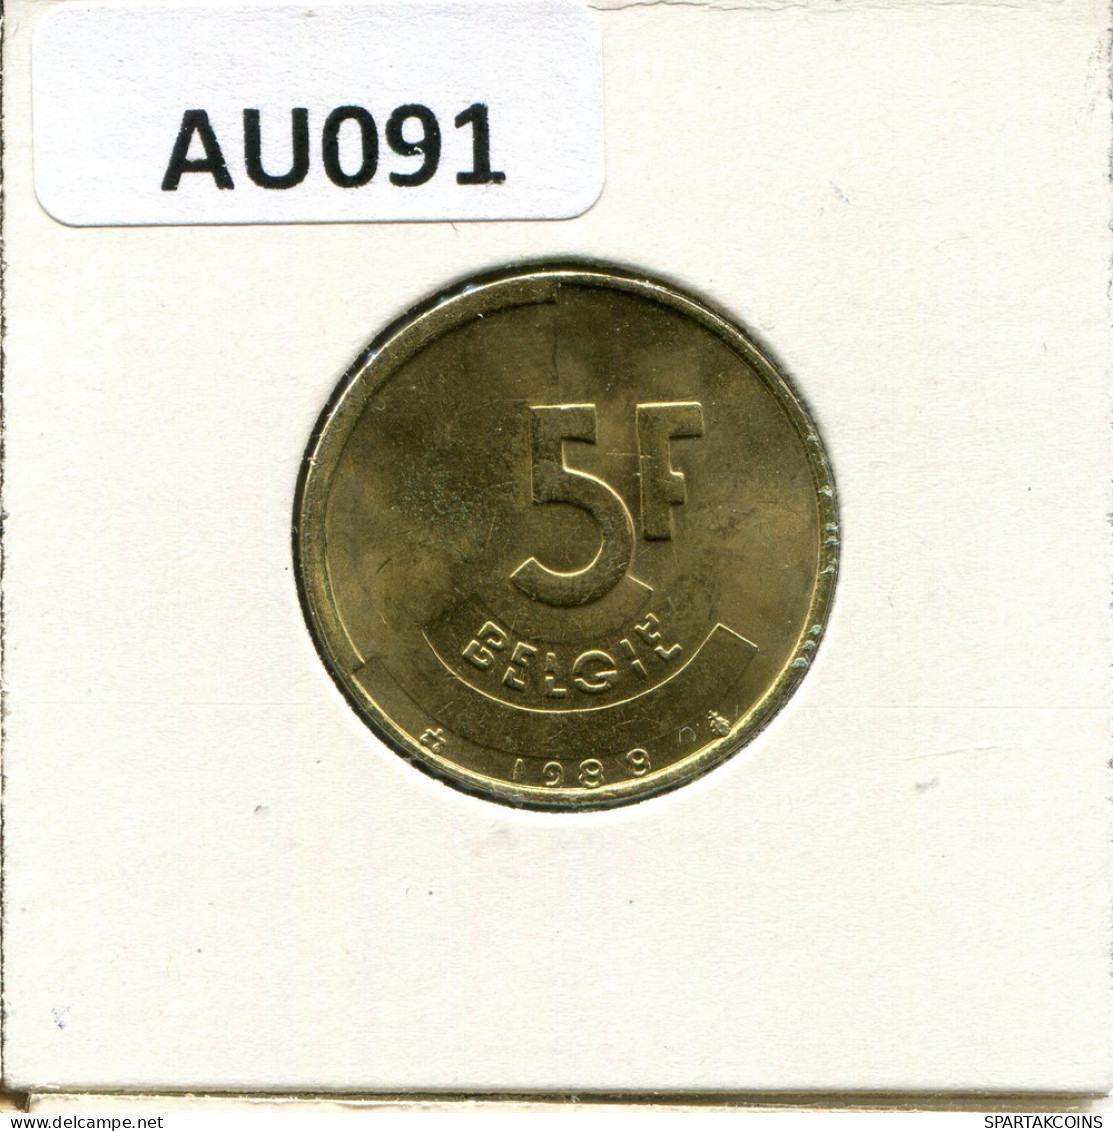 5 FRANCS 1988 DUTCH Text BELGIUM Coin #AU091.U.A - 5 Francs